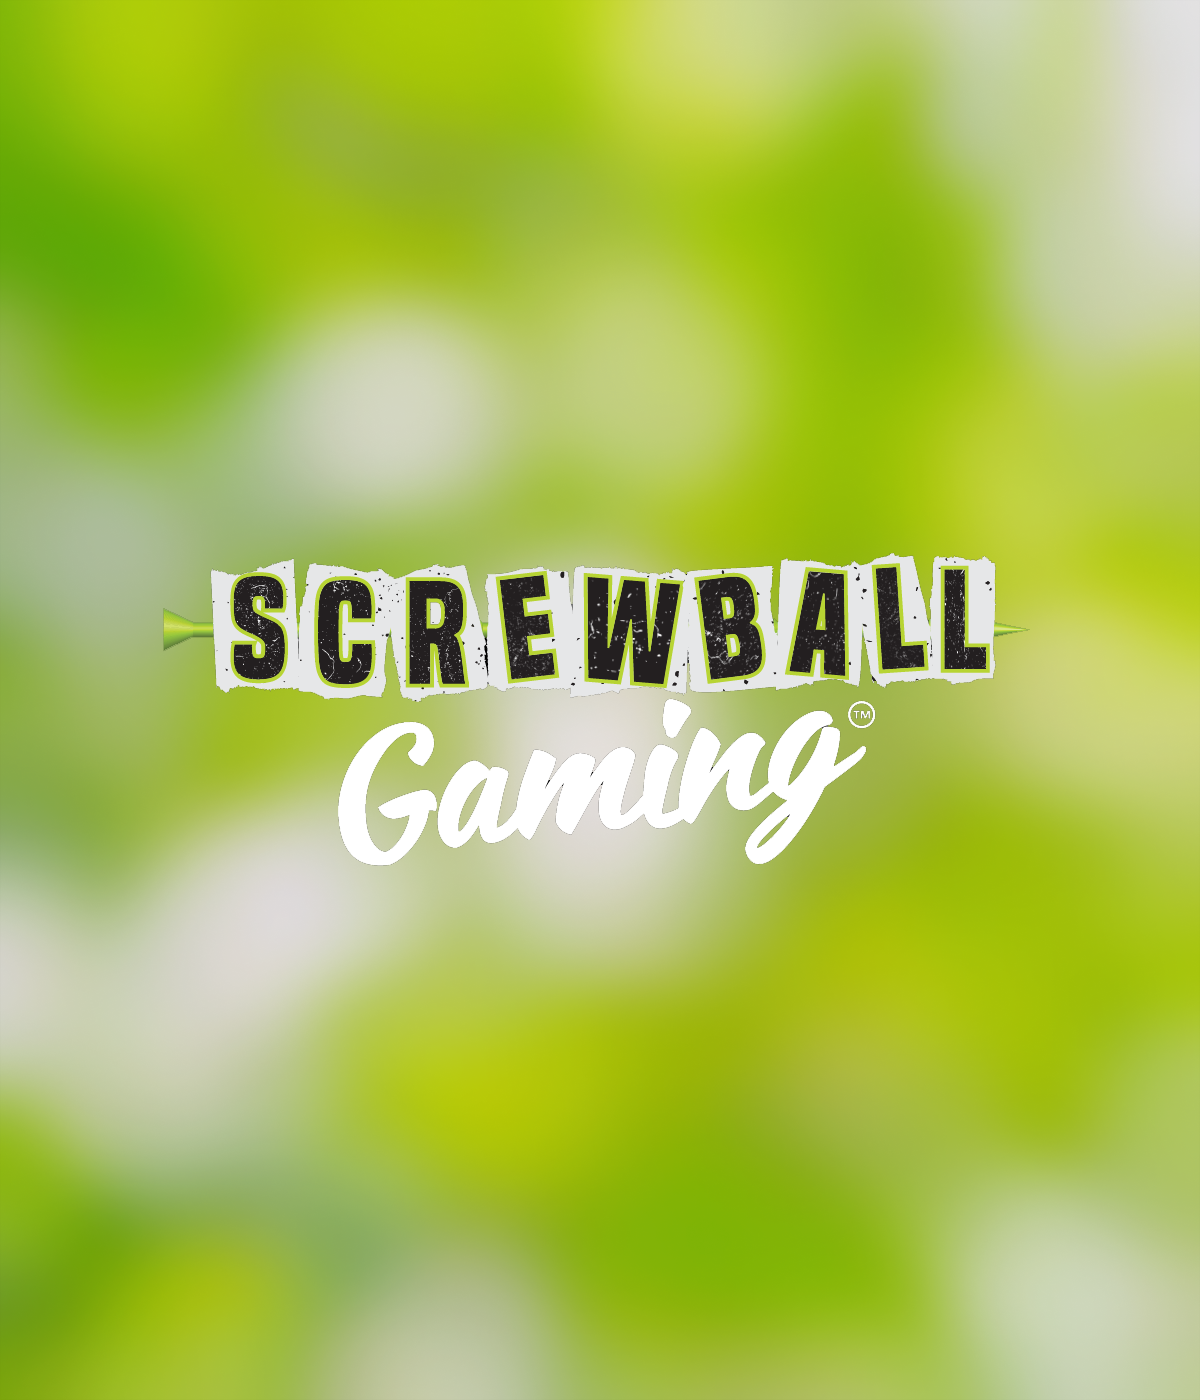 ScrewBall Gaming